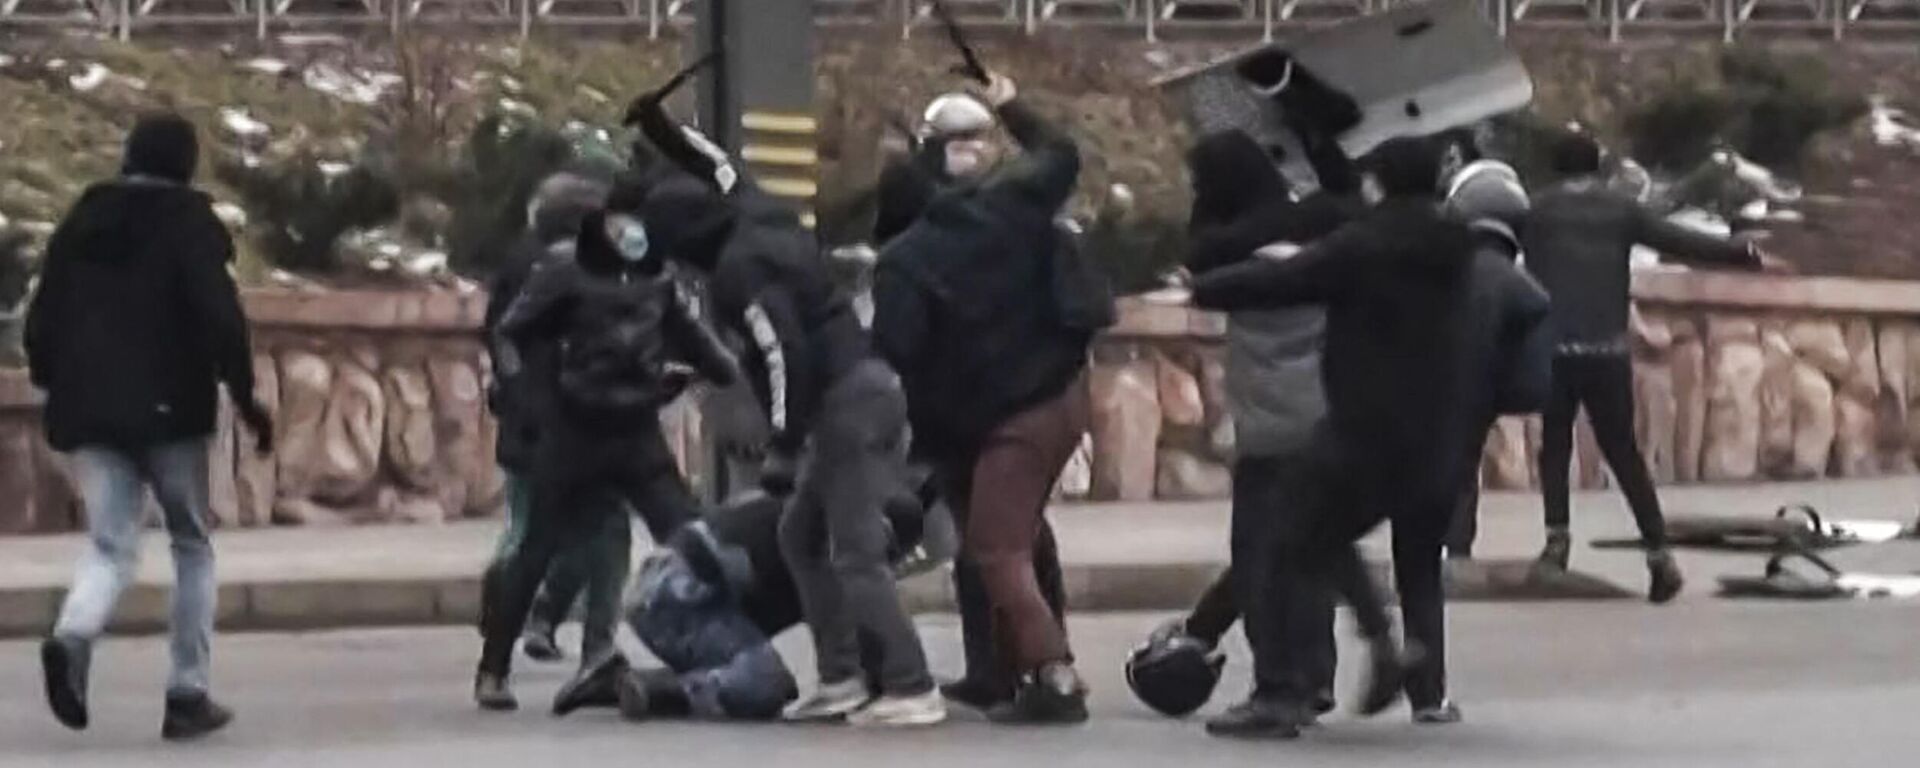 Протесты и беспорядки в Казахстане. Столкновения протестующих и силовиков в Алма-Ате - Sputnik Грузия, 1920, 06.01.2022